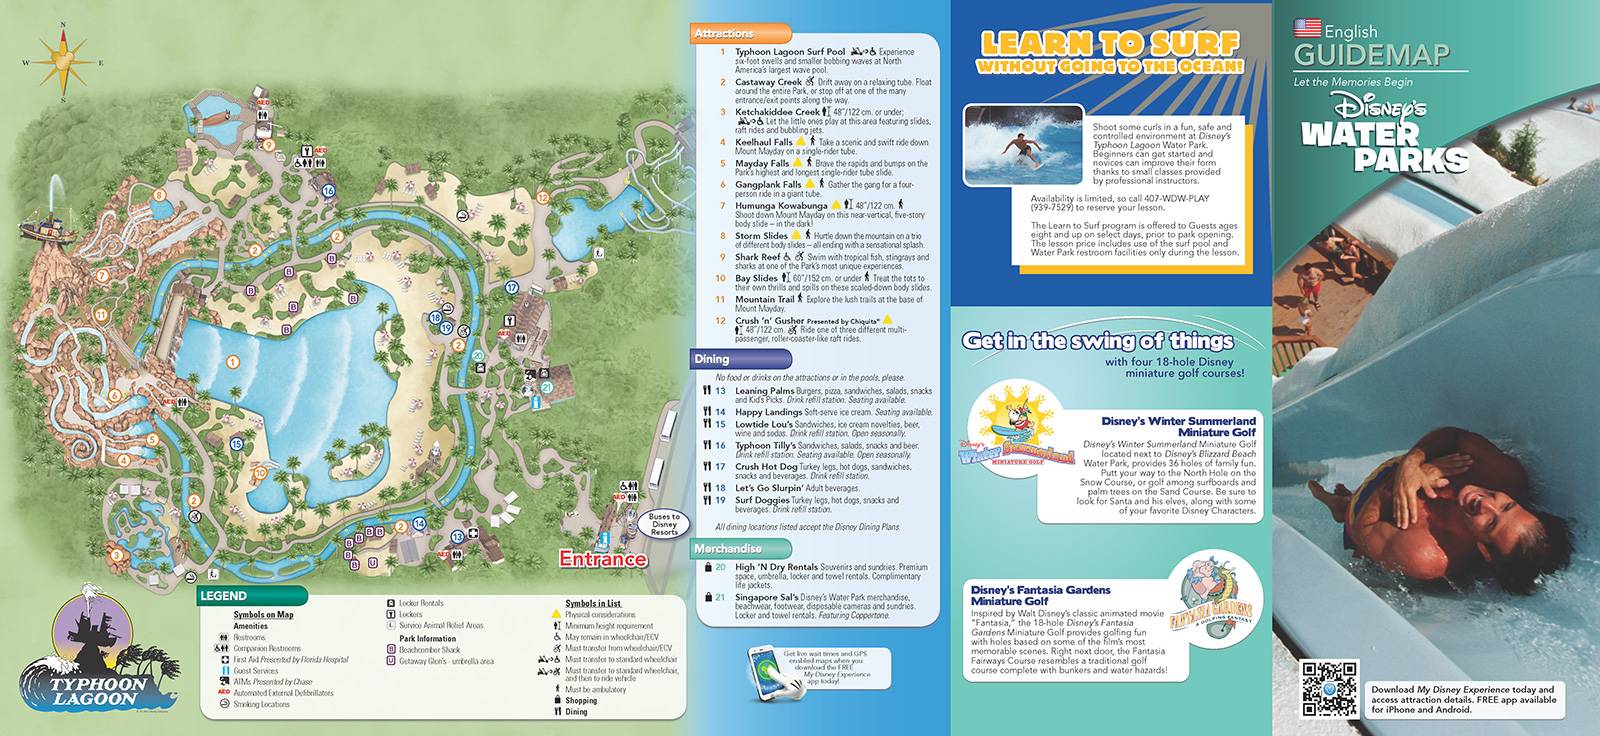 New 2013 Typhoon Lagoon Guidemap